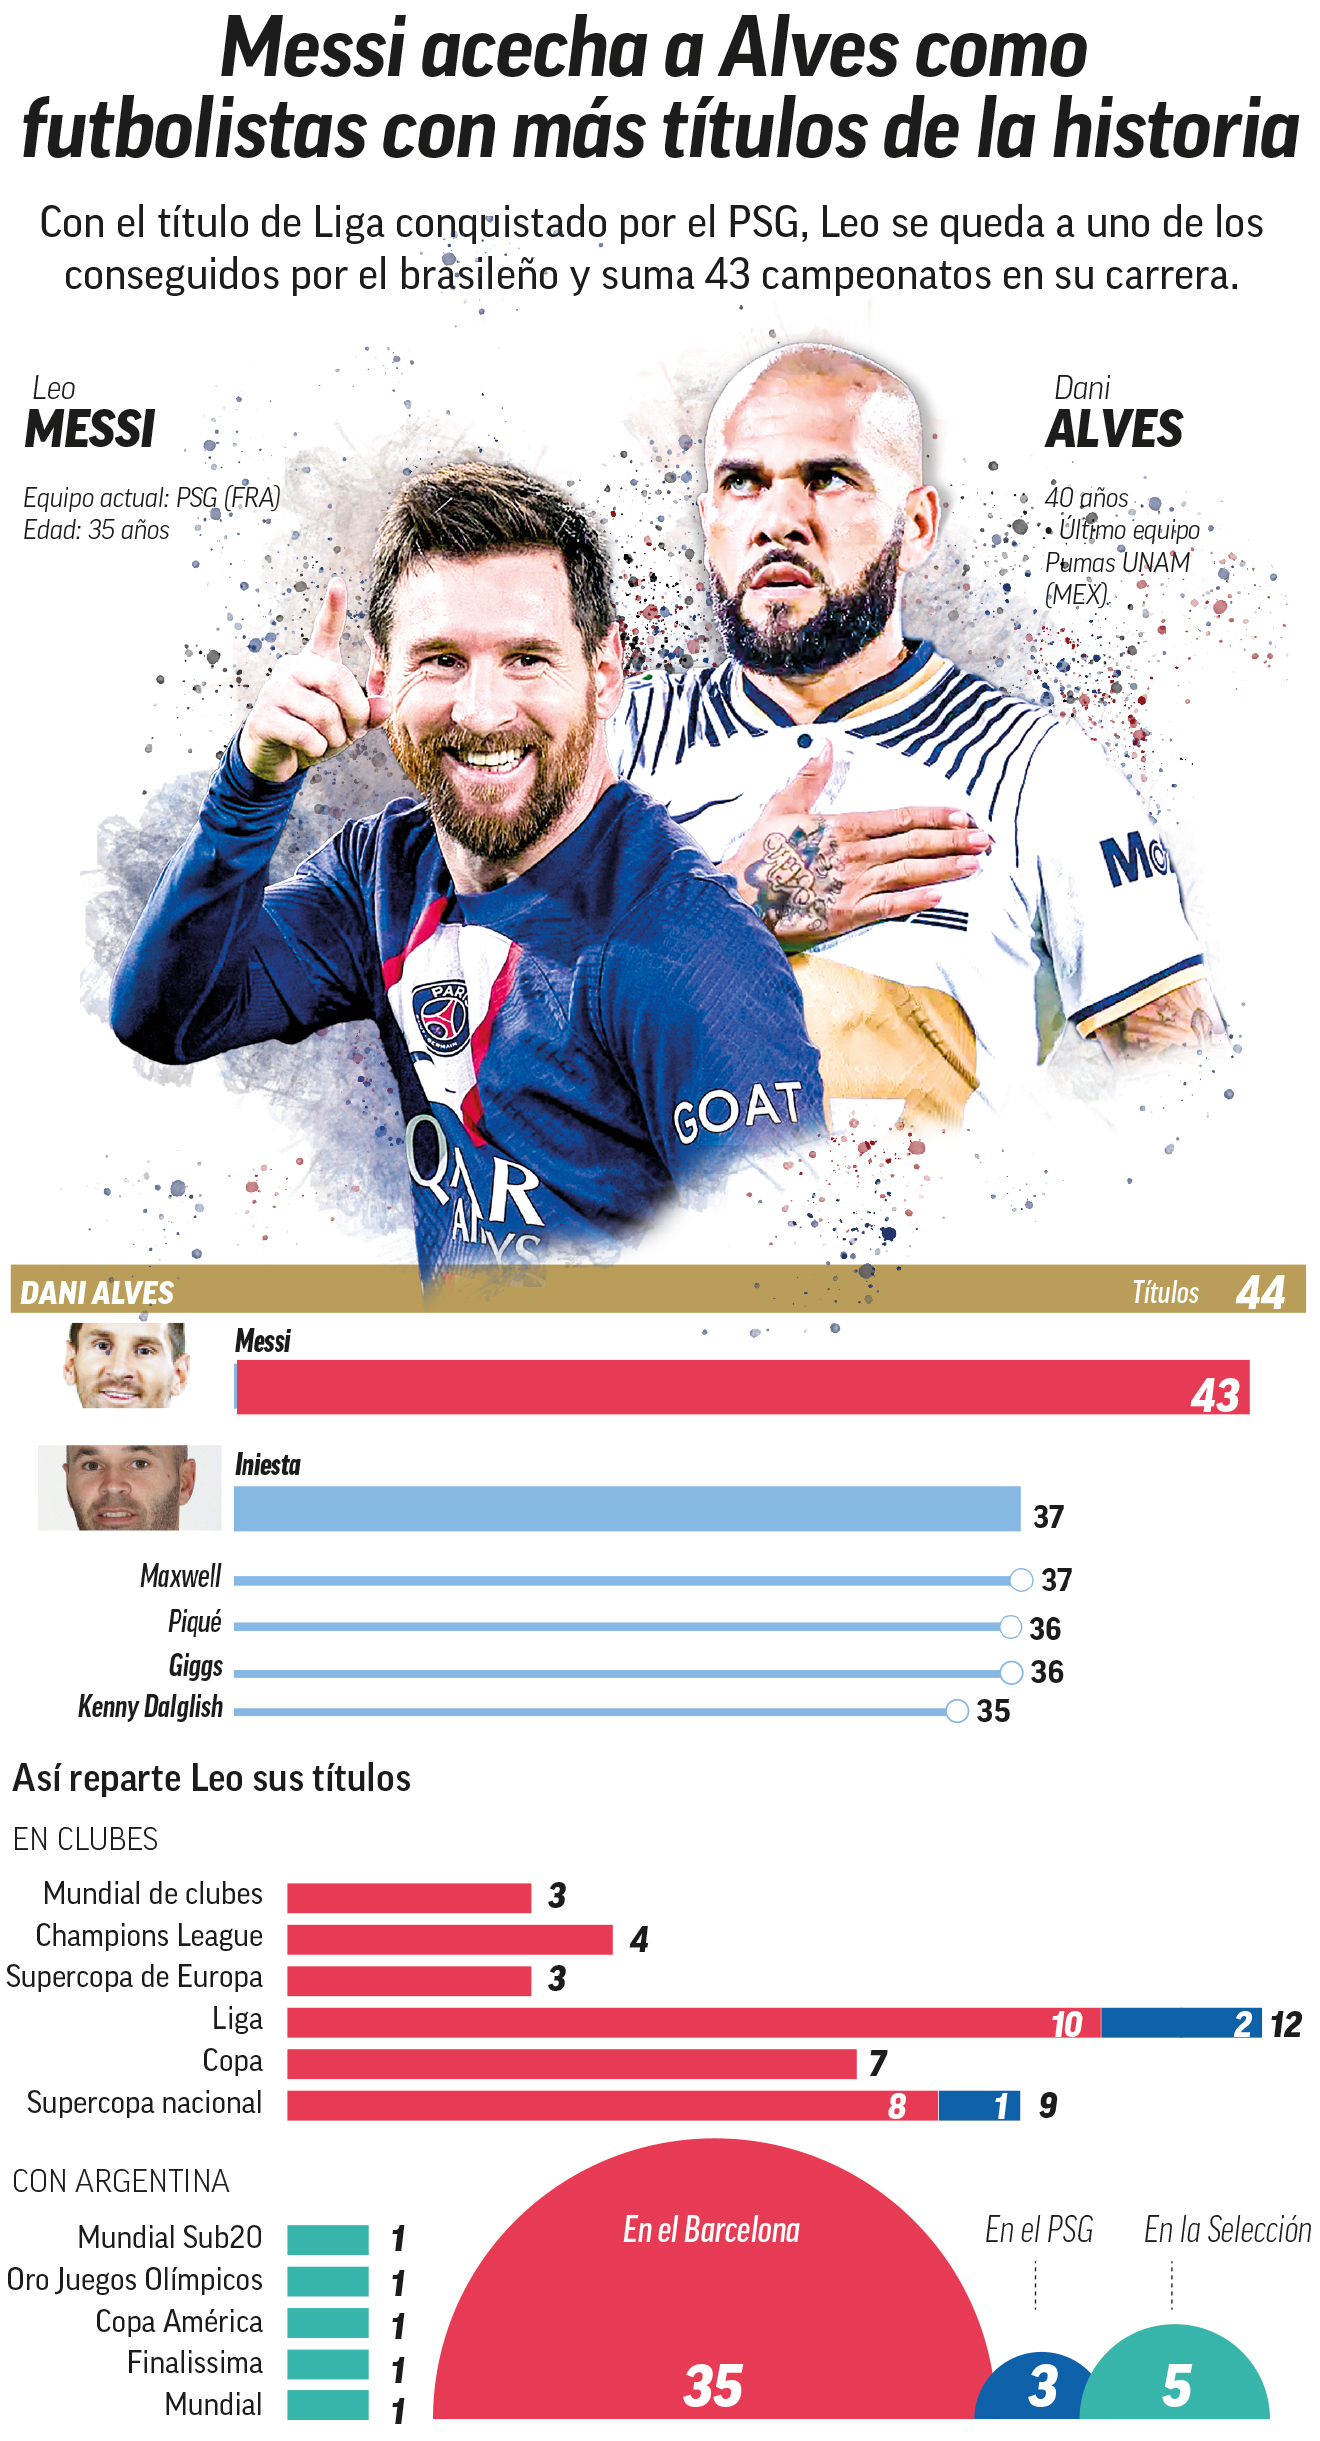 Leo Messi acecha más que nunca a Dani Alves como futbolista con más títulos de la historia